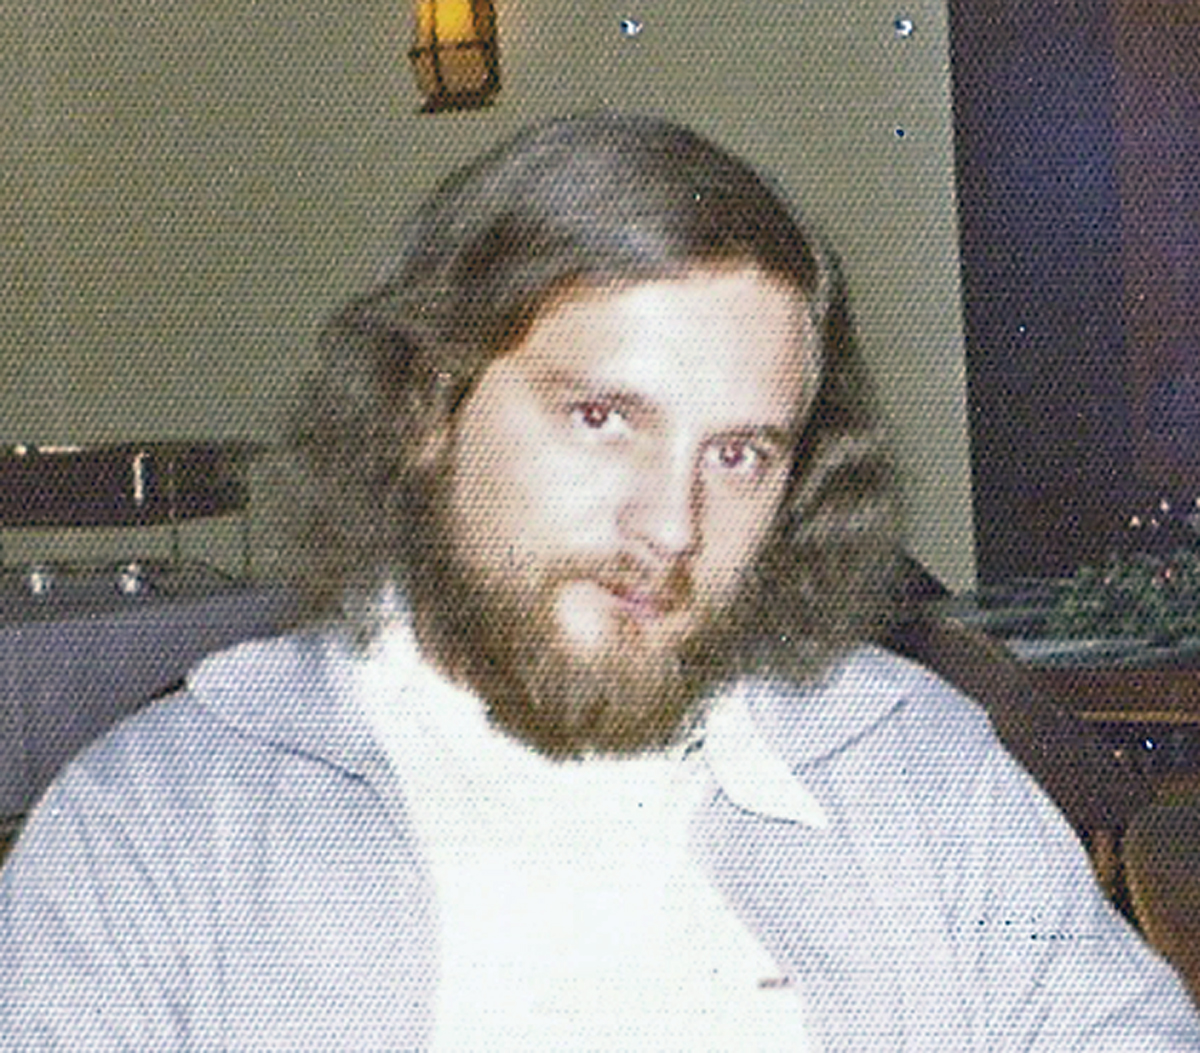 [Bob+1972.jpg]